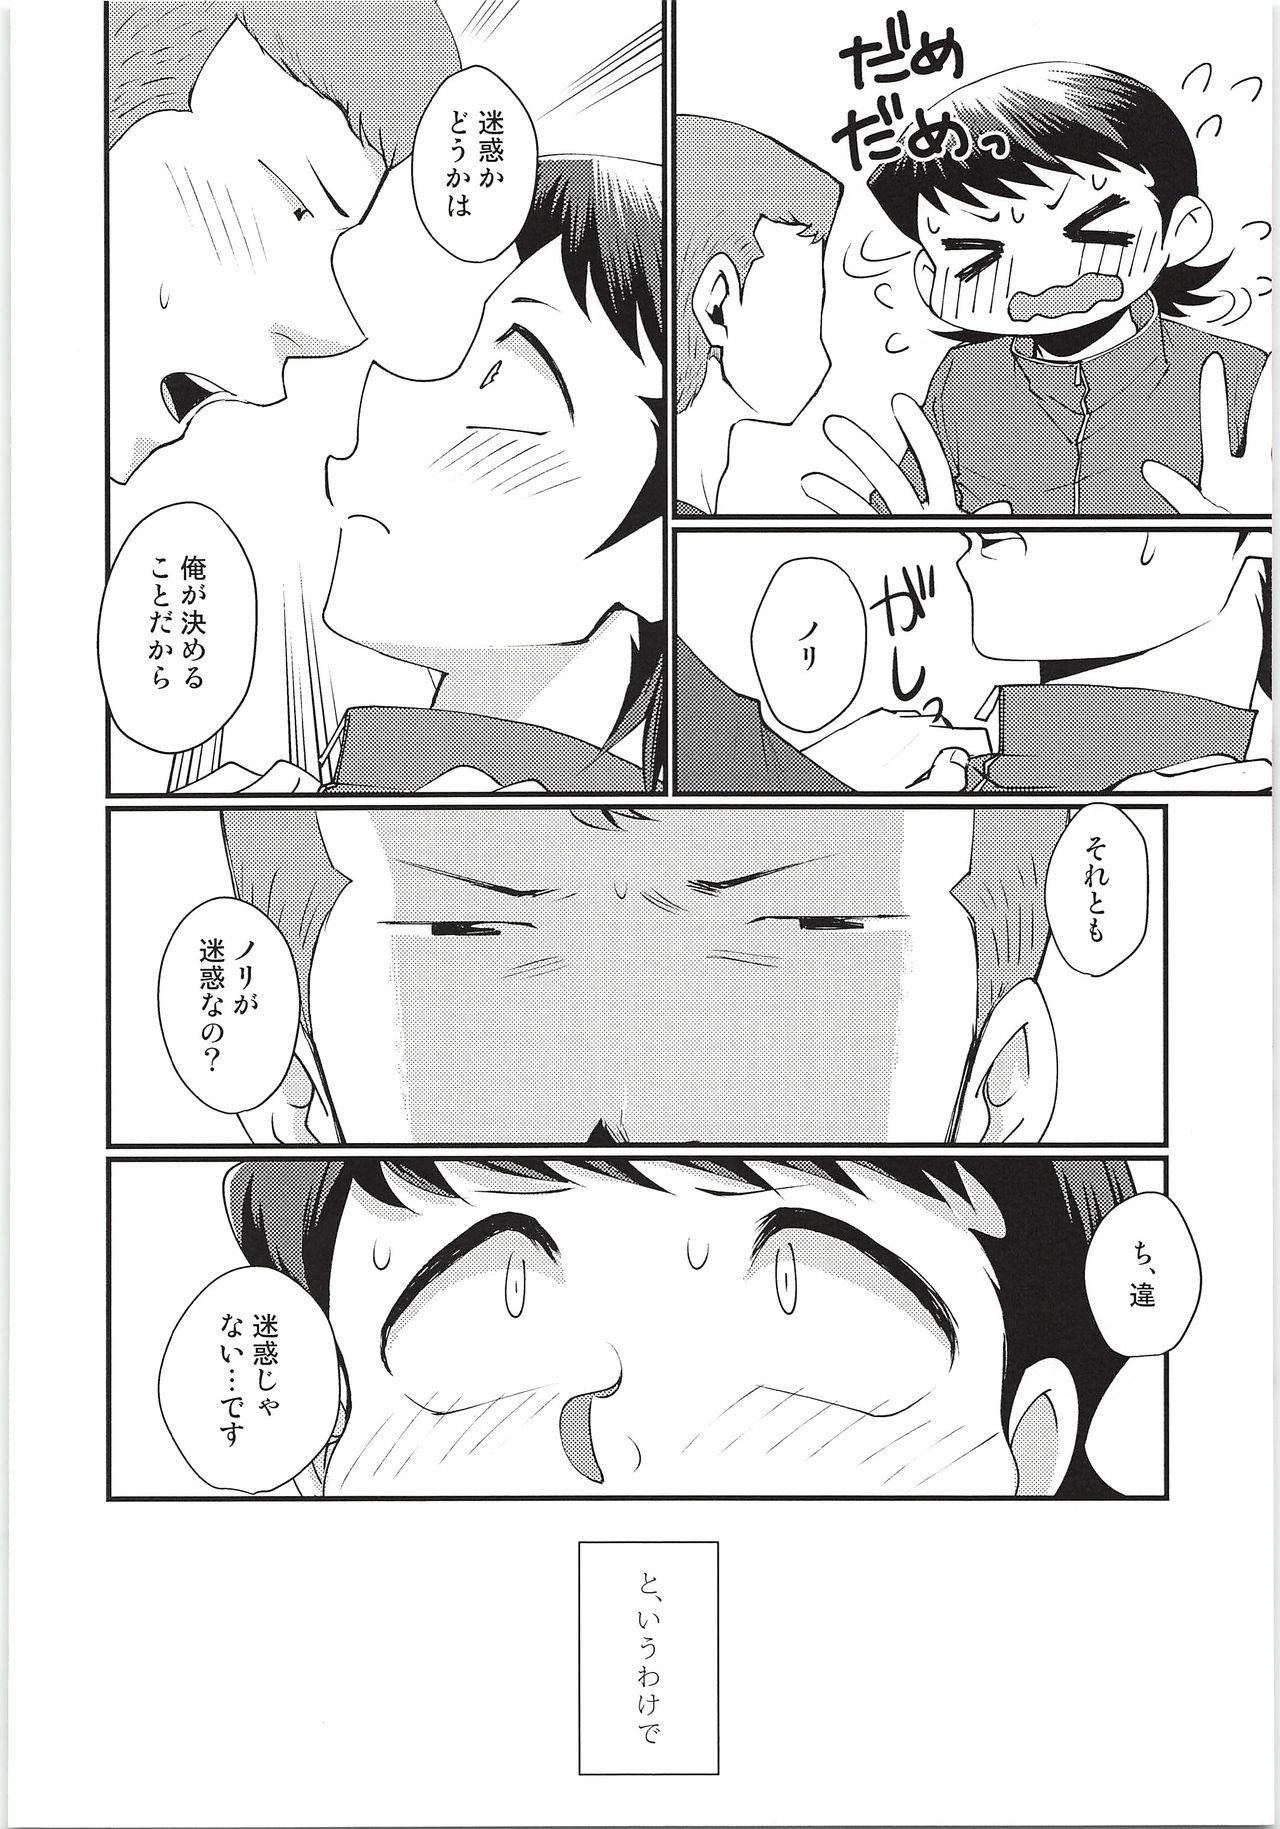 Three Some Hazukashikute Shinisou - Daiya no ace Closeups - Page 7